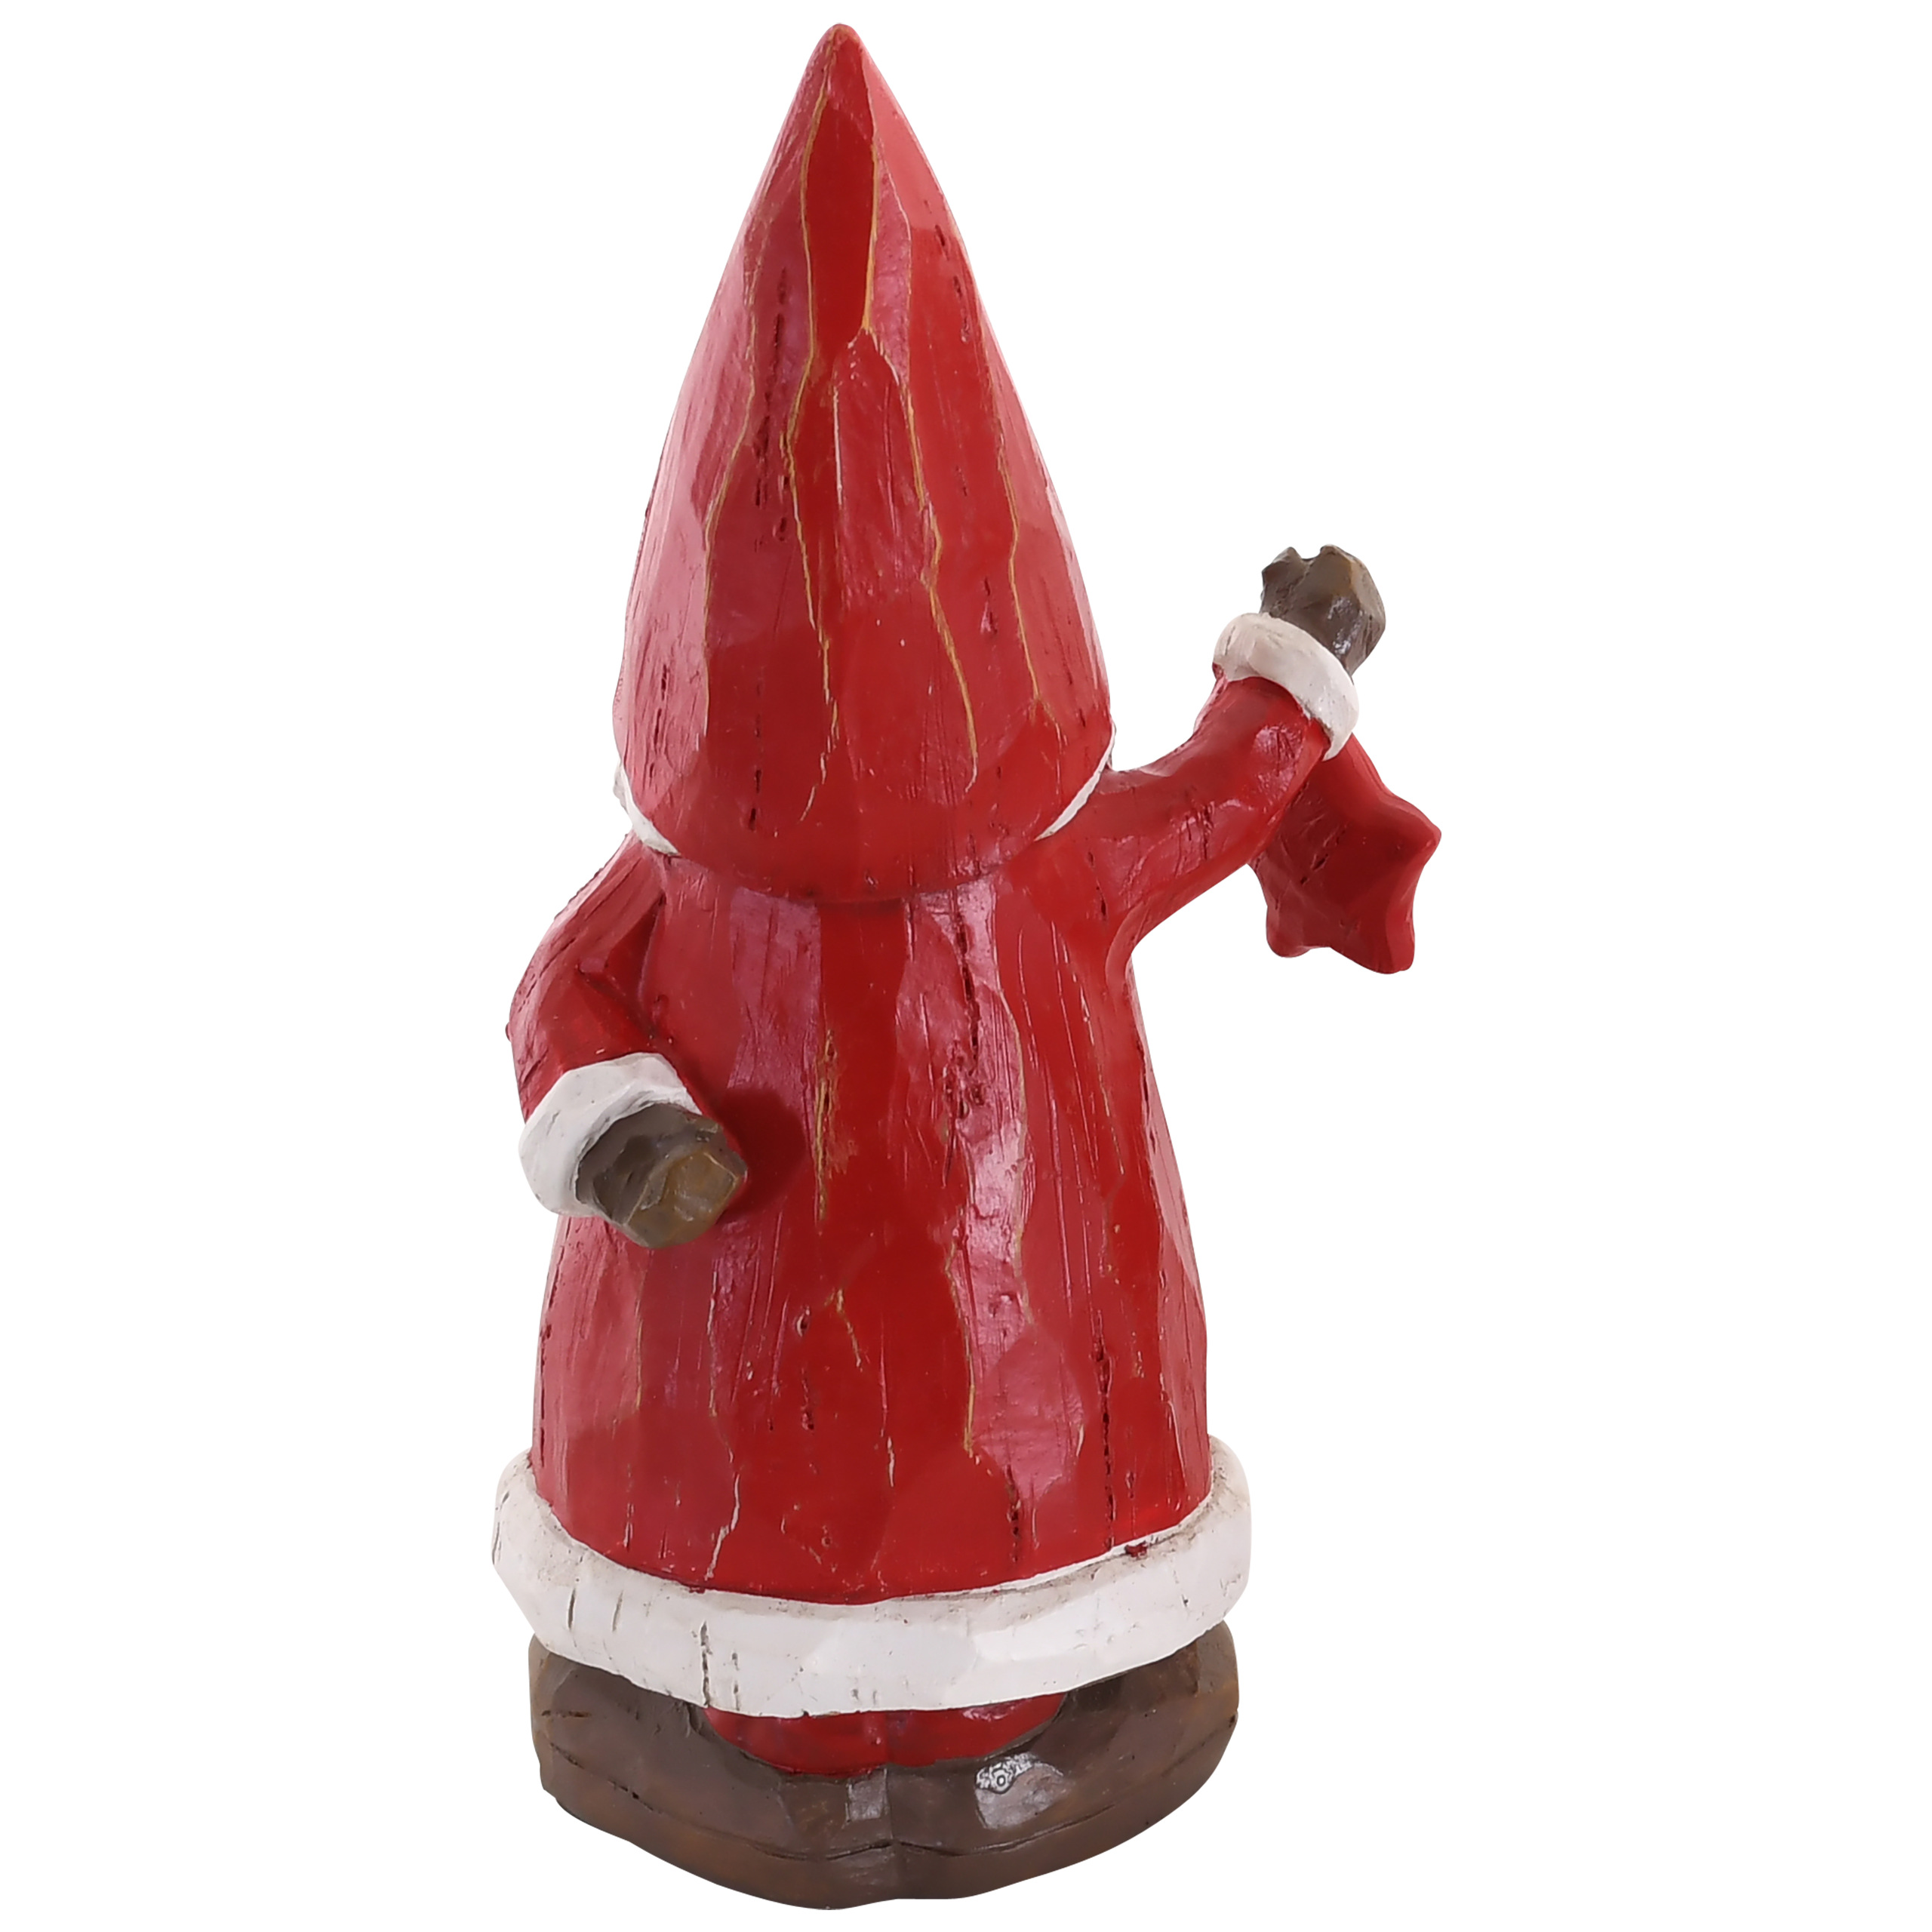 Raburg Dekofigur Weihnachtsmann mit Stern in geschnitzter Holzoptik, roter Mantel, stehend, 20,5 cm hoch